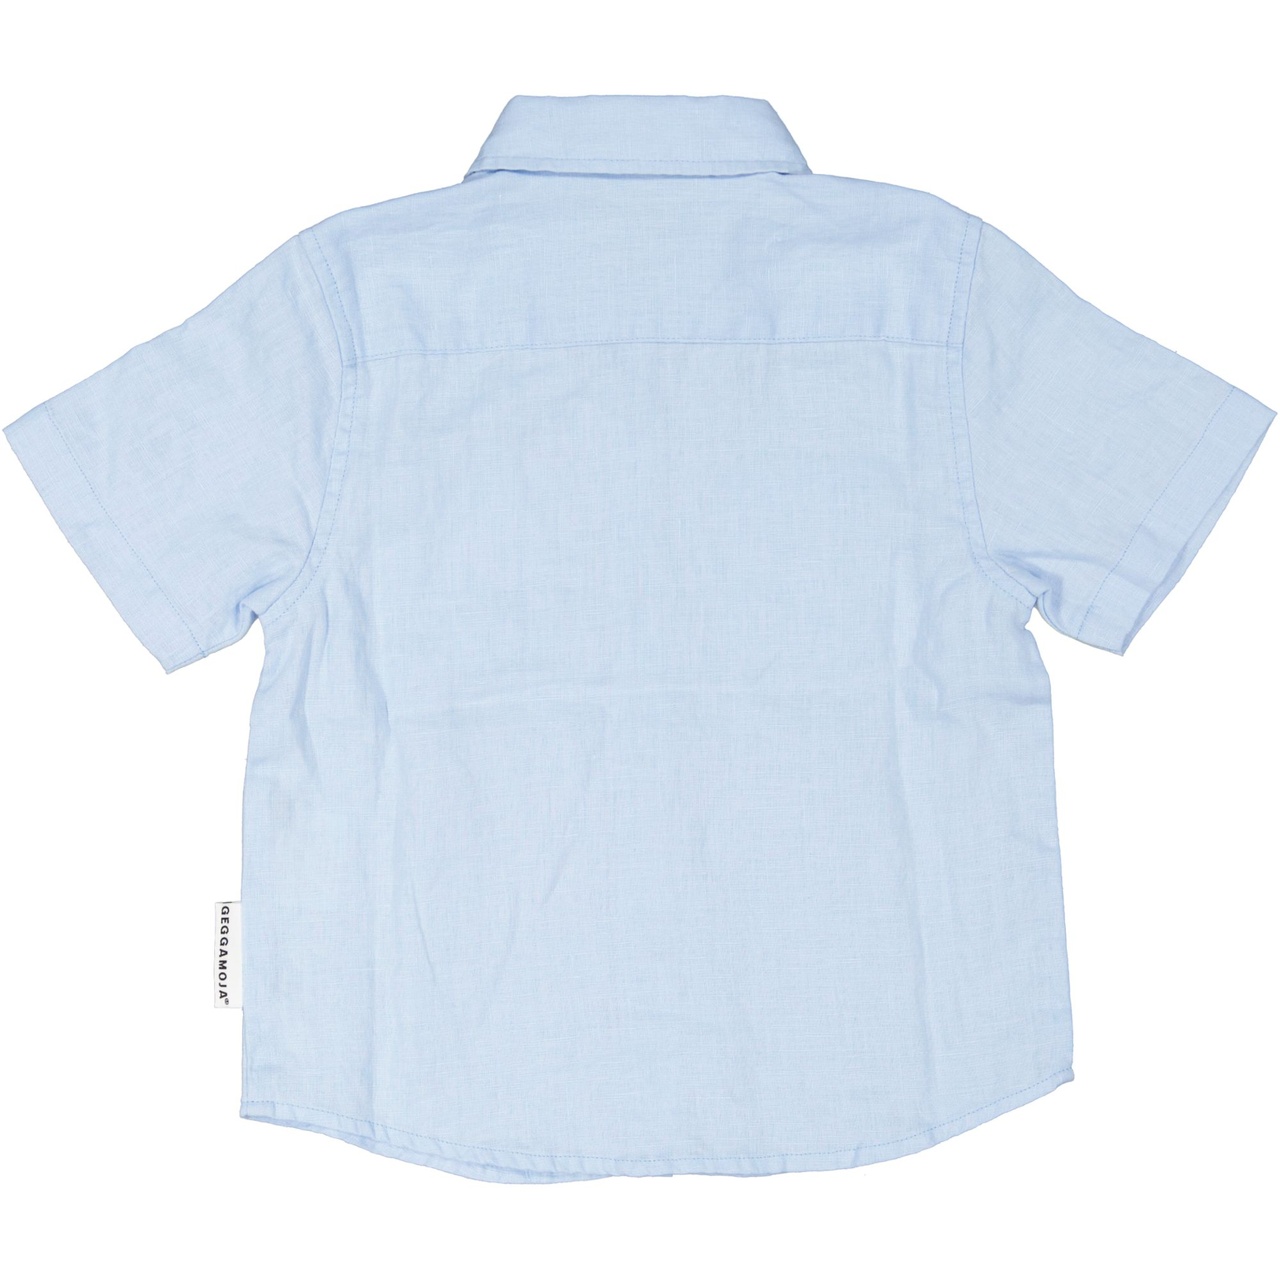 Linnen shirt L.blue 122/128